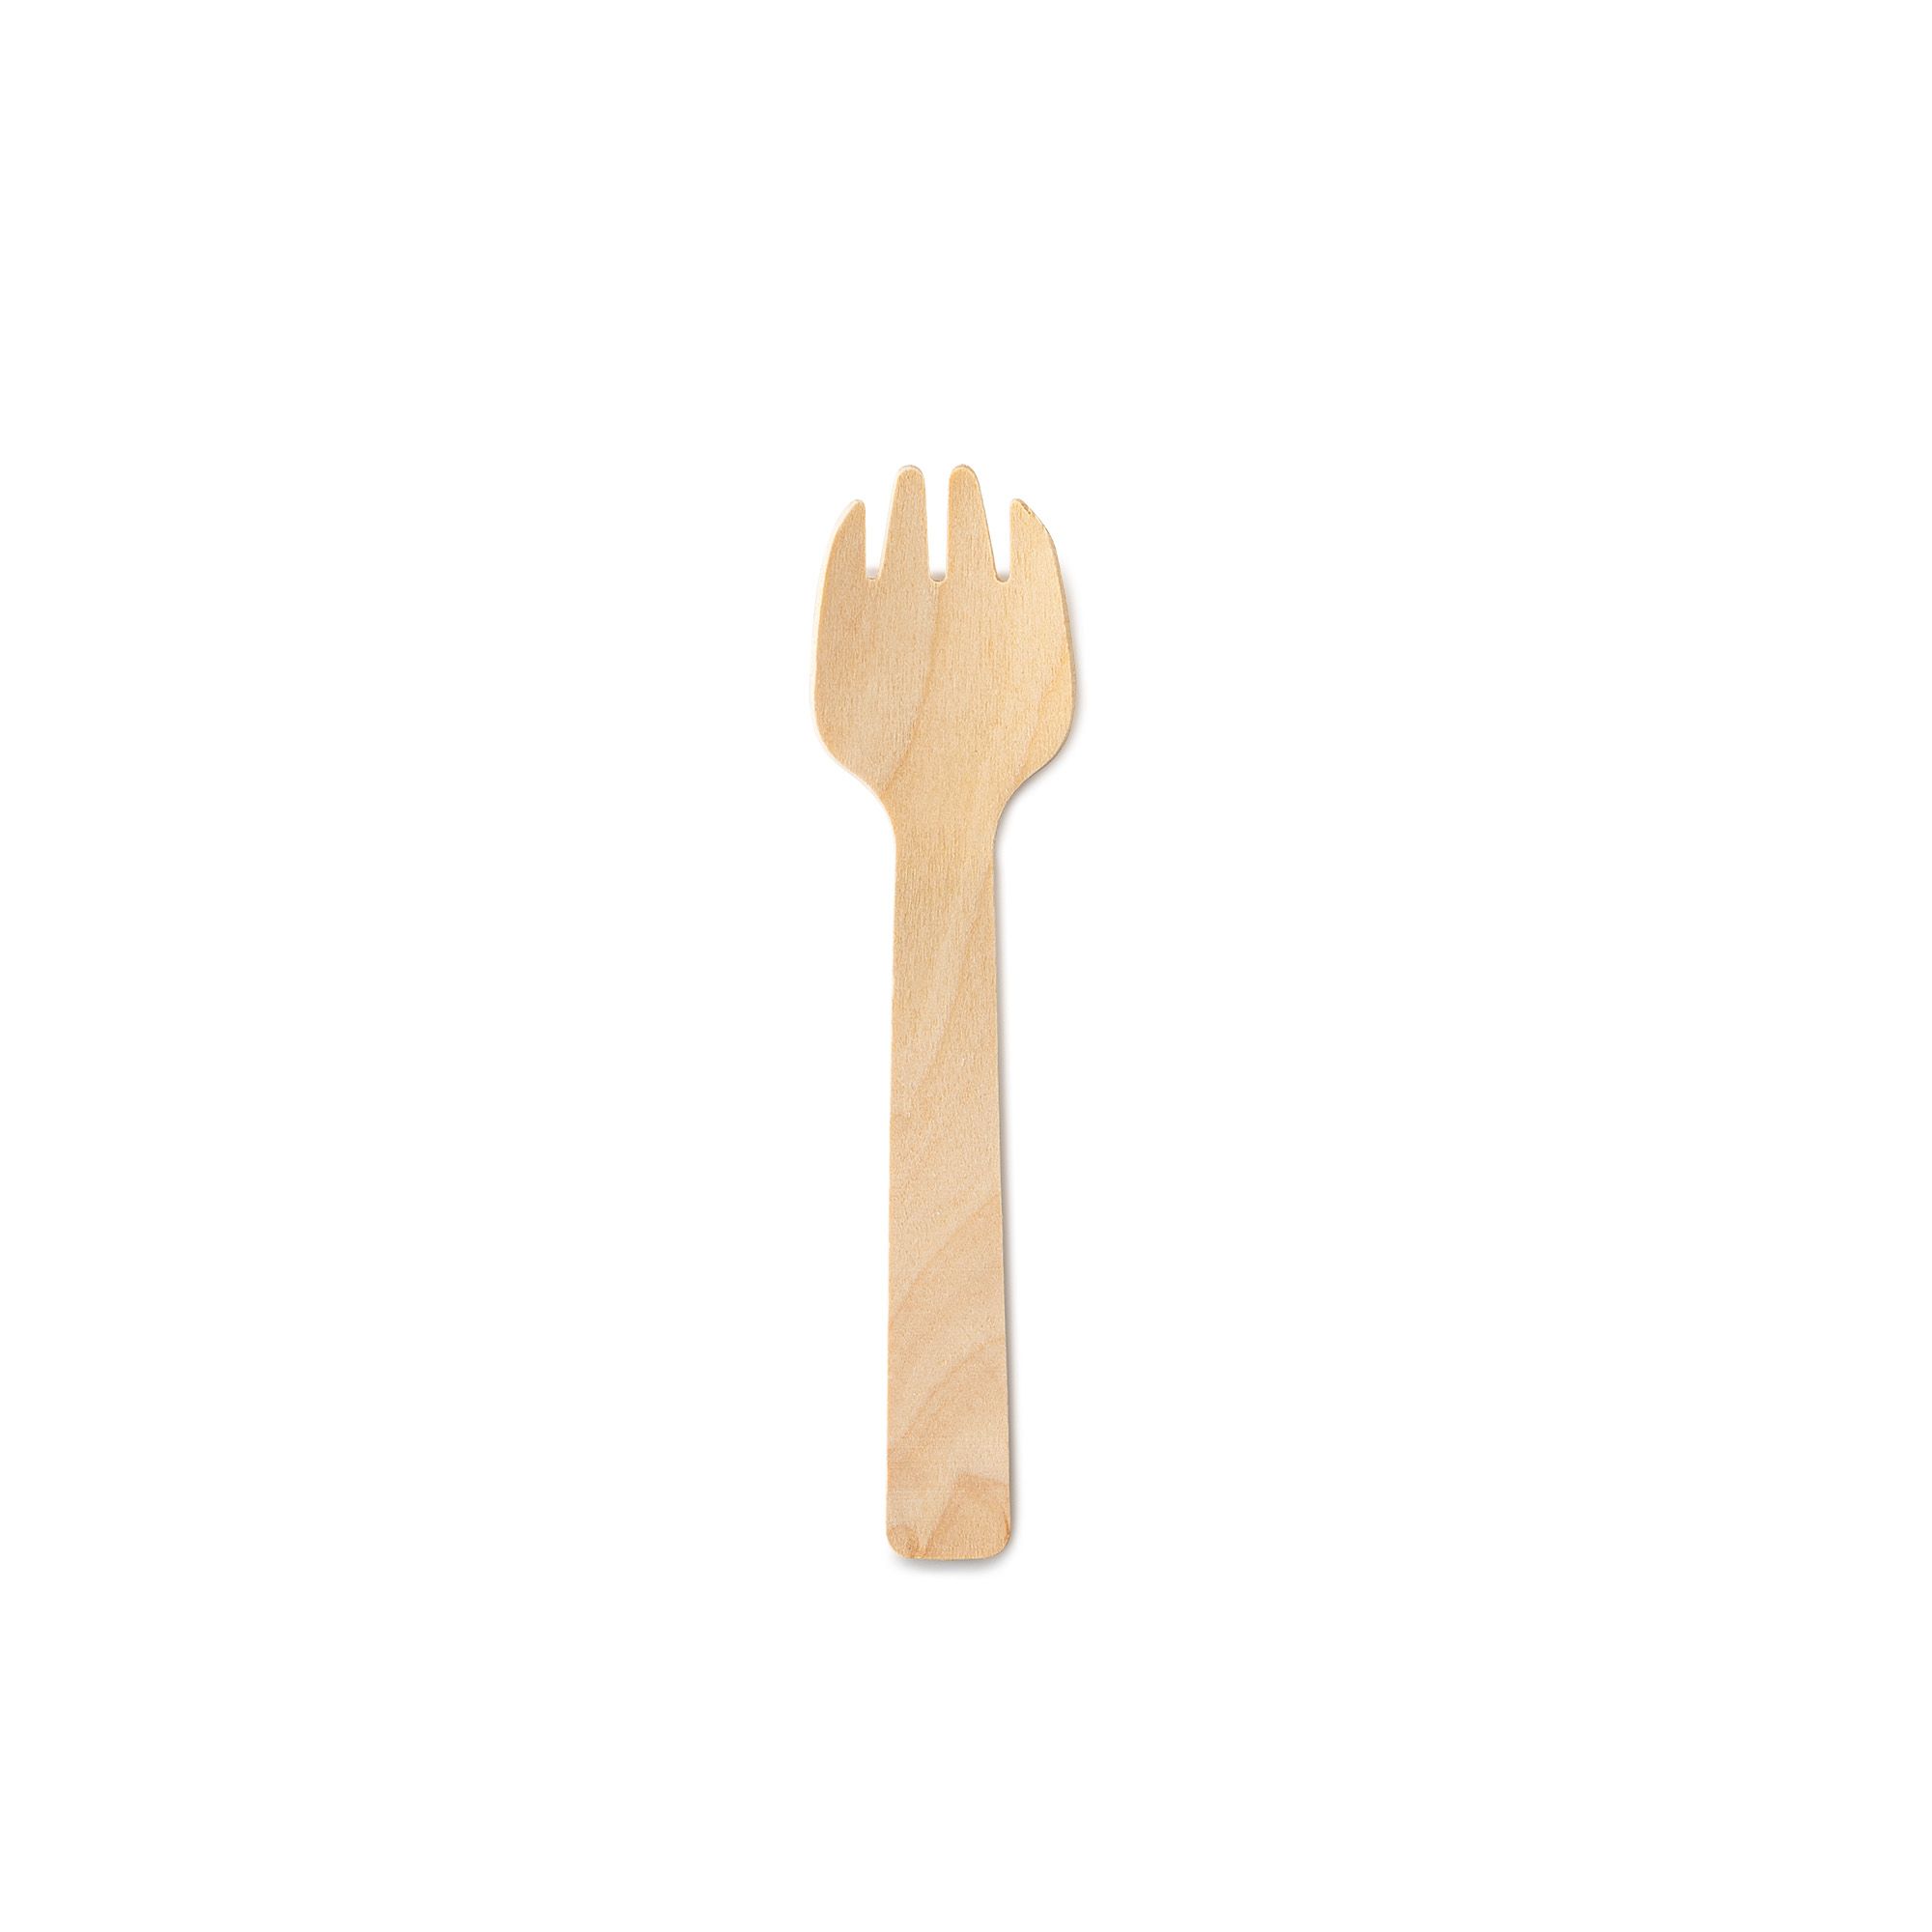  Mini tenedores para postres – Paquete a granel de 4800